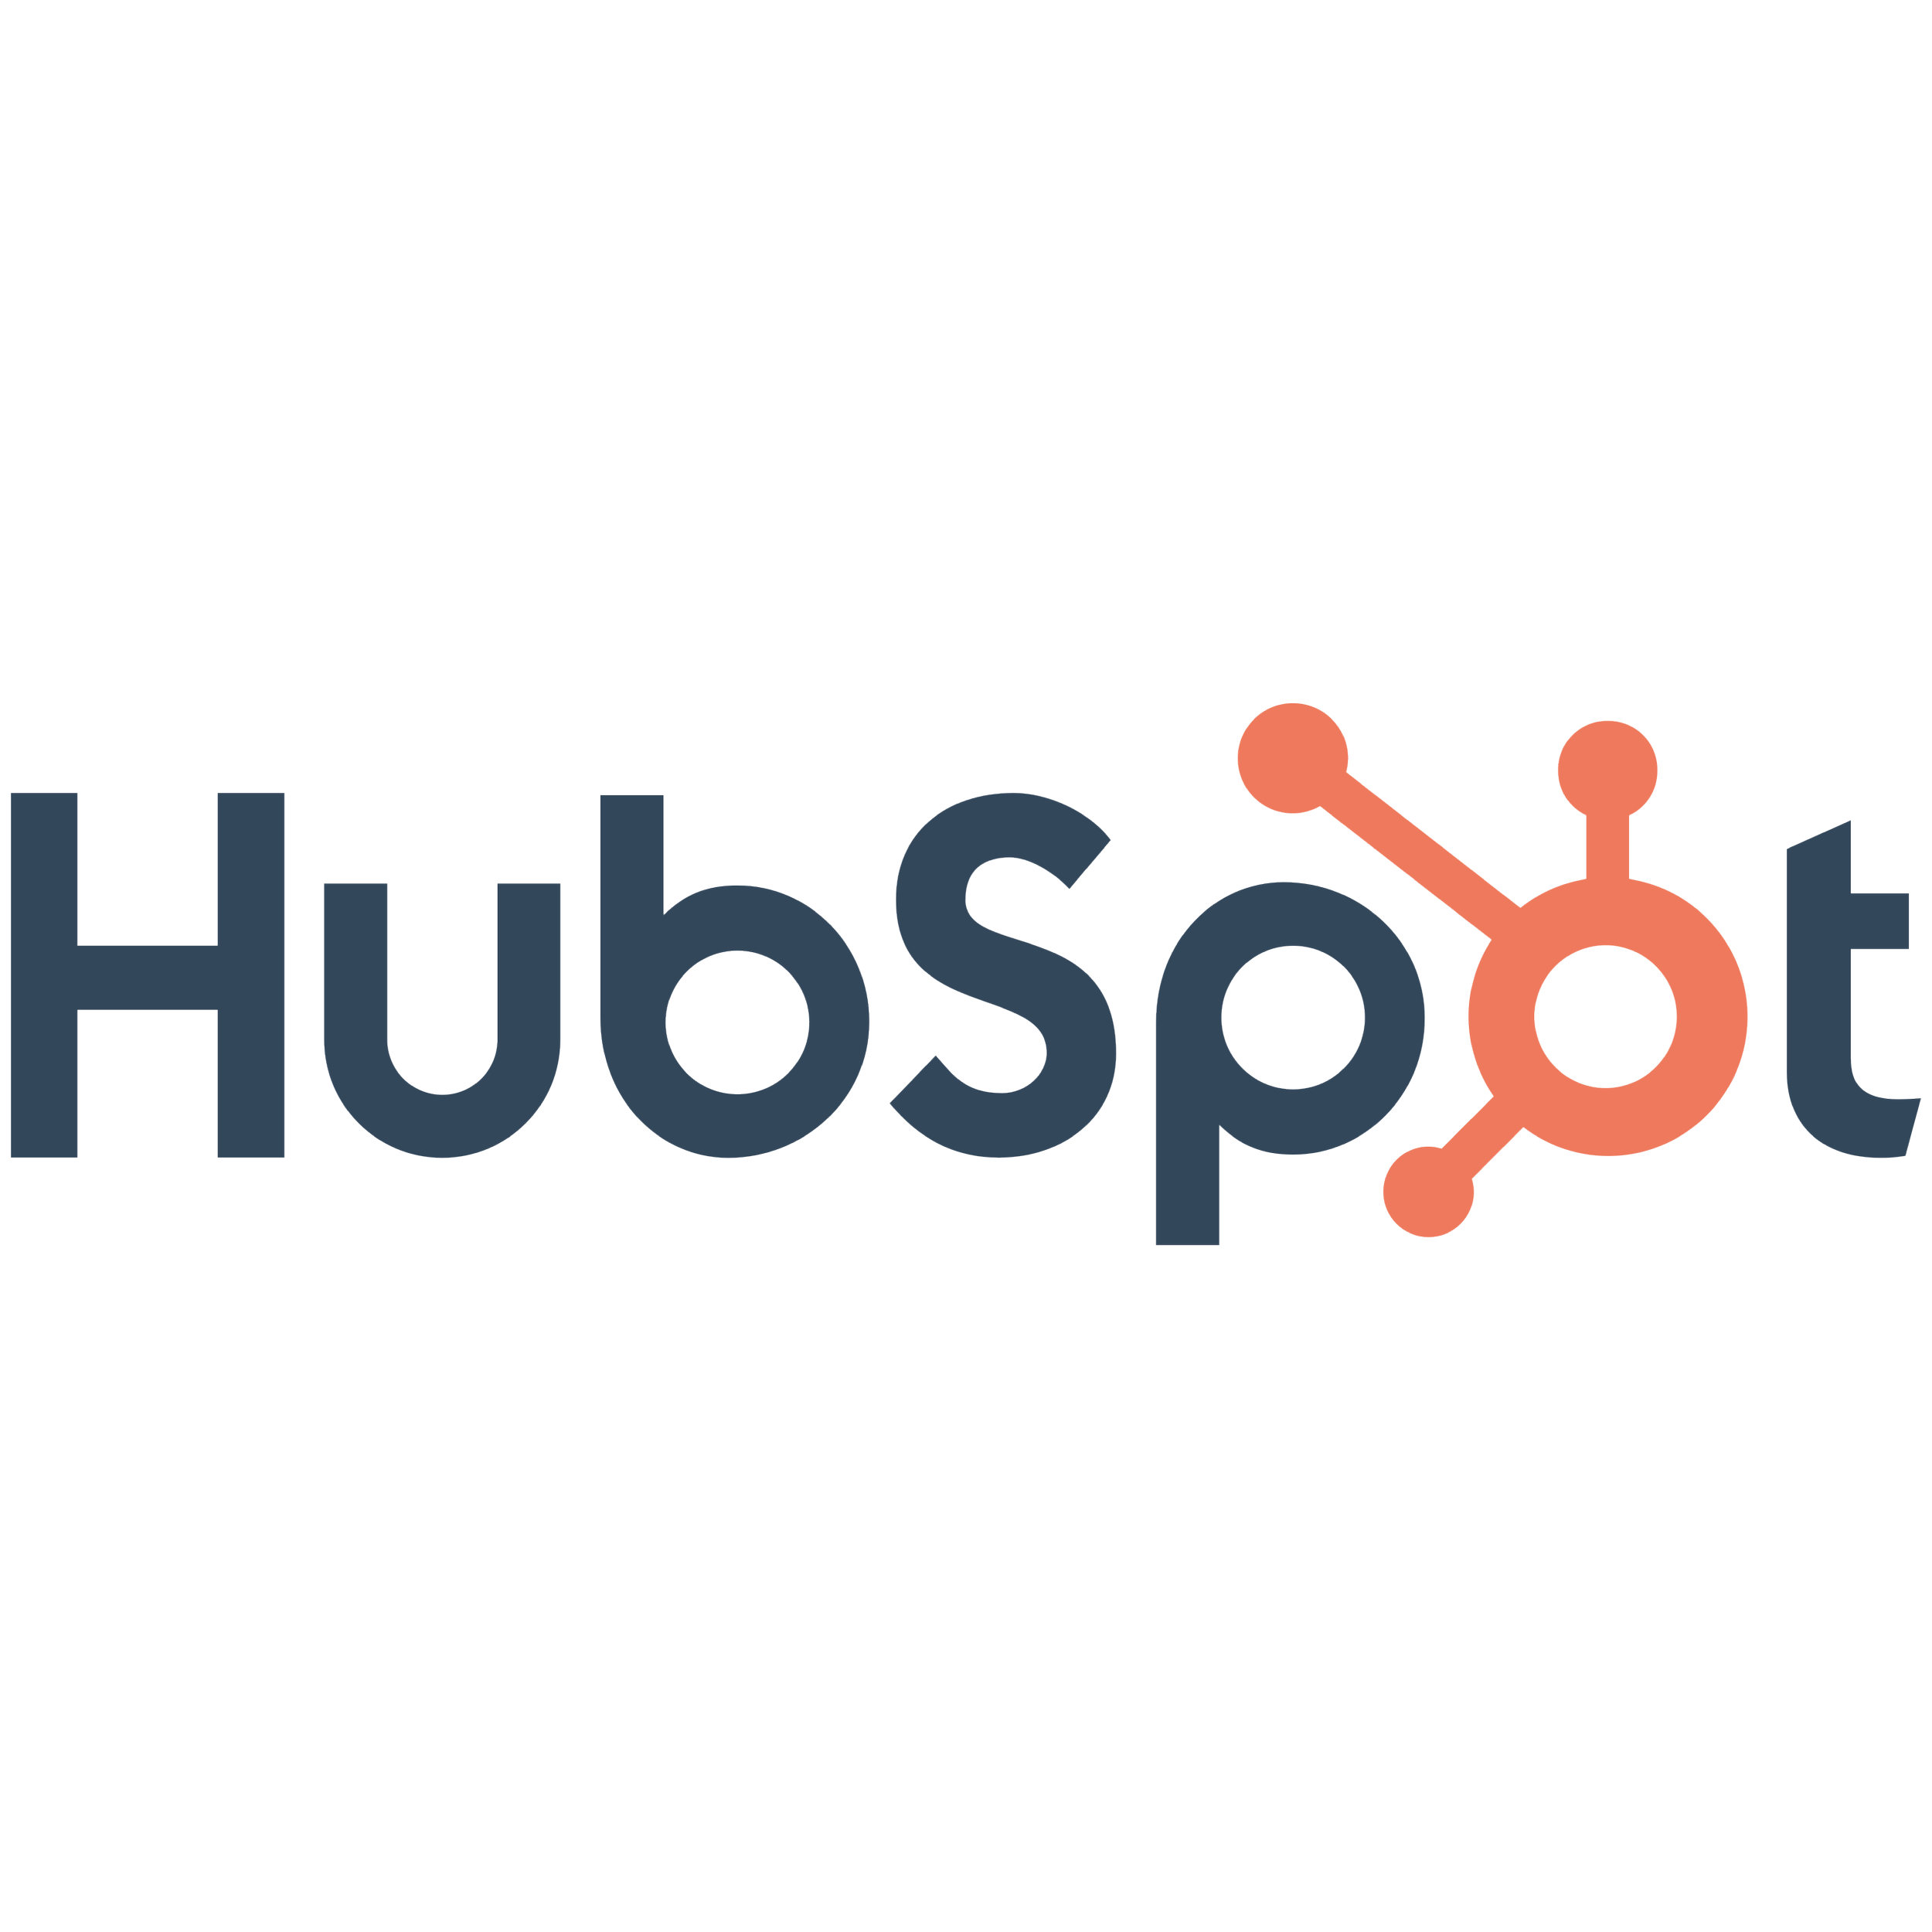 HUBSPOT-01.png